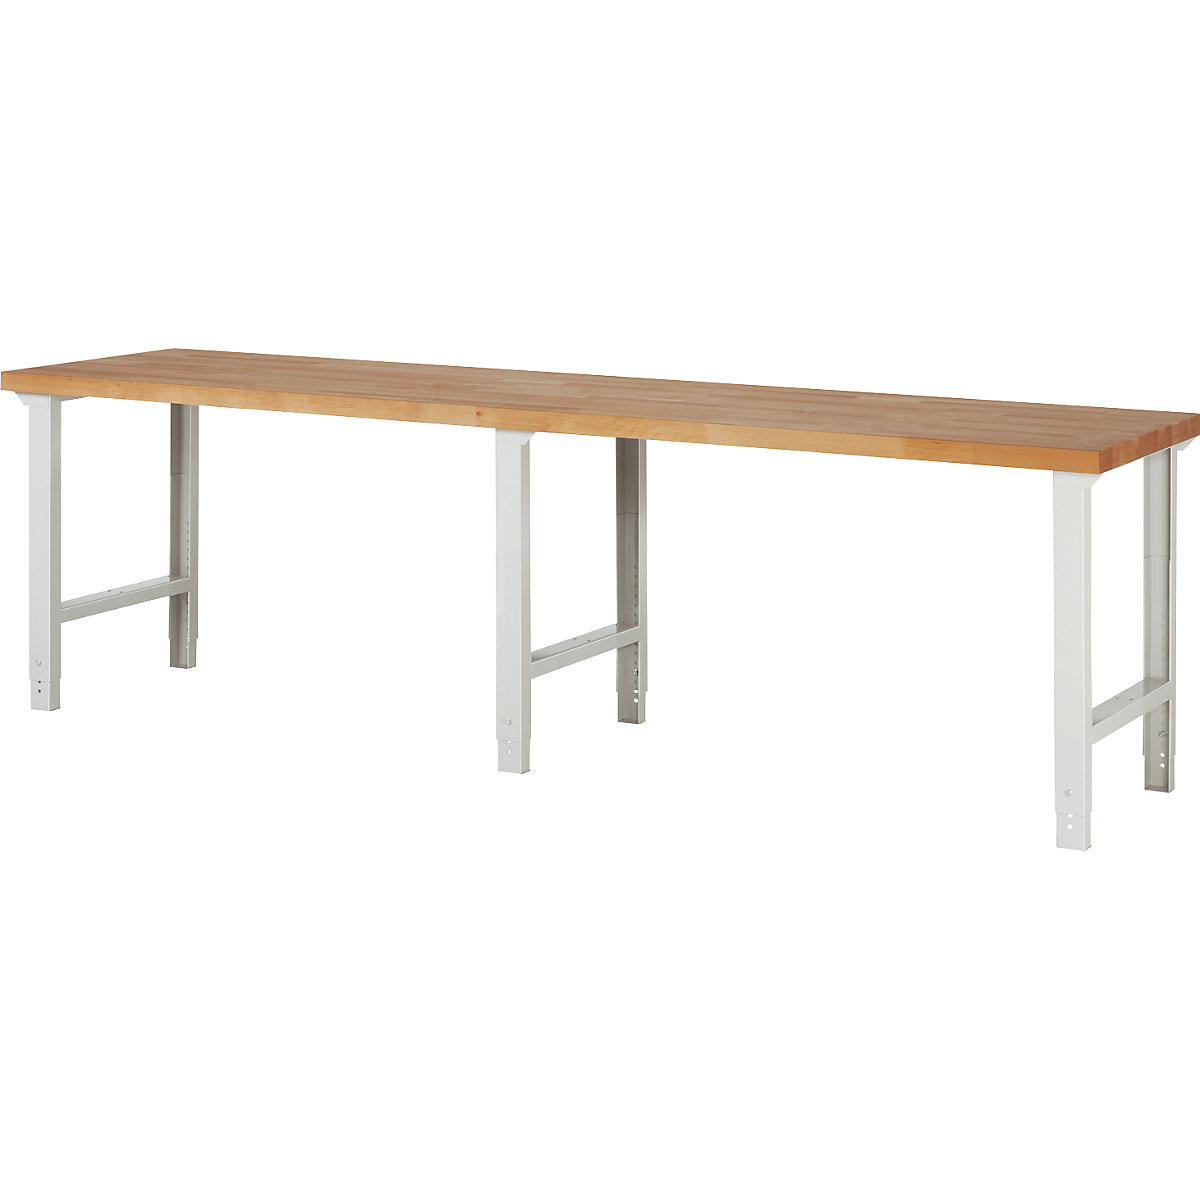 EUROKRAFTpro – Modulna delovna miza, brez spodnjih elementov, zelo široka izvedba, ŠxG 3000 x 700 mm